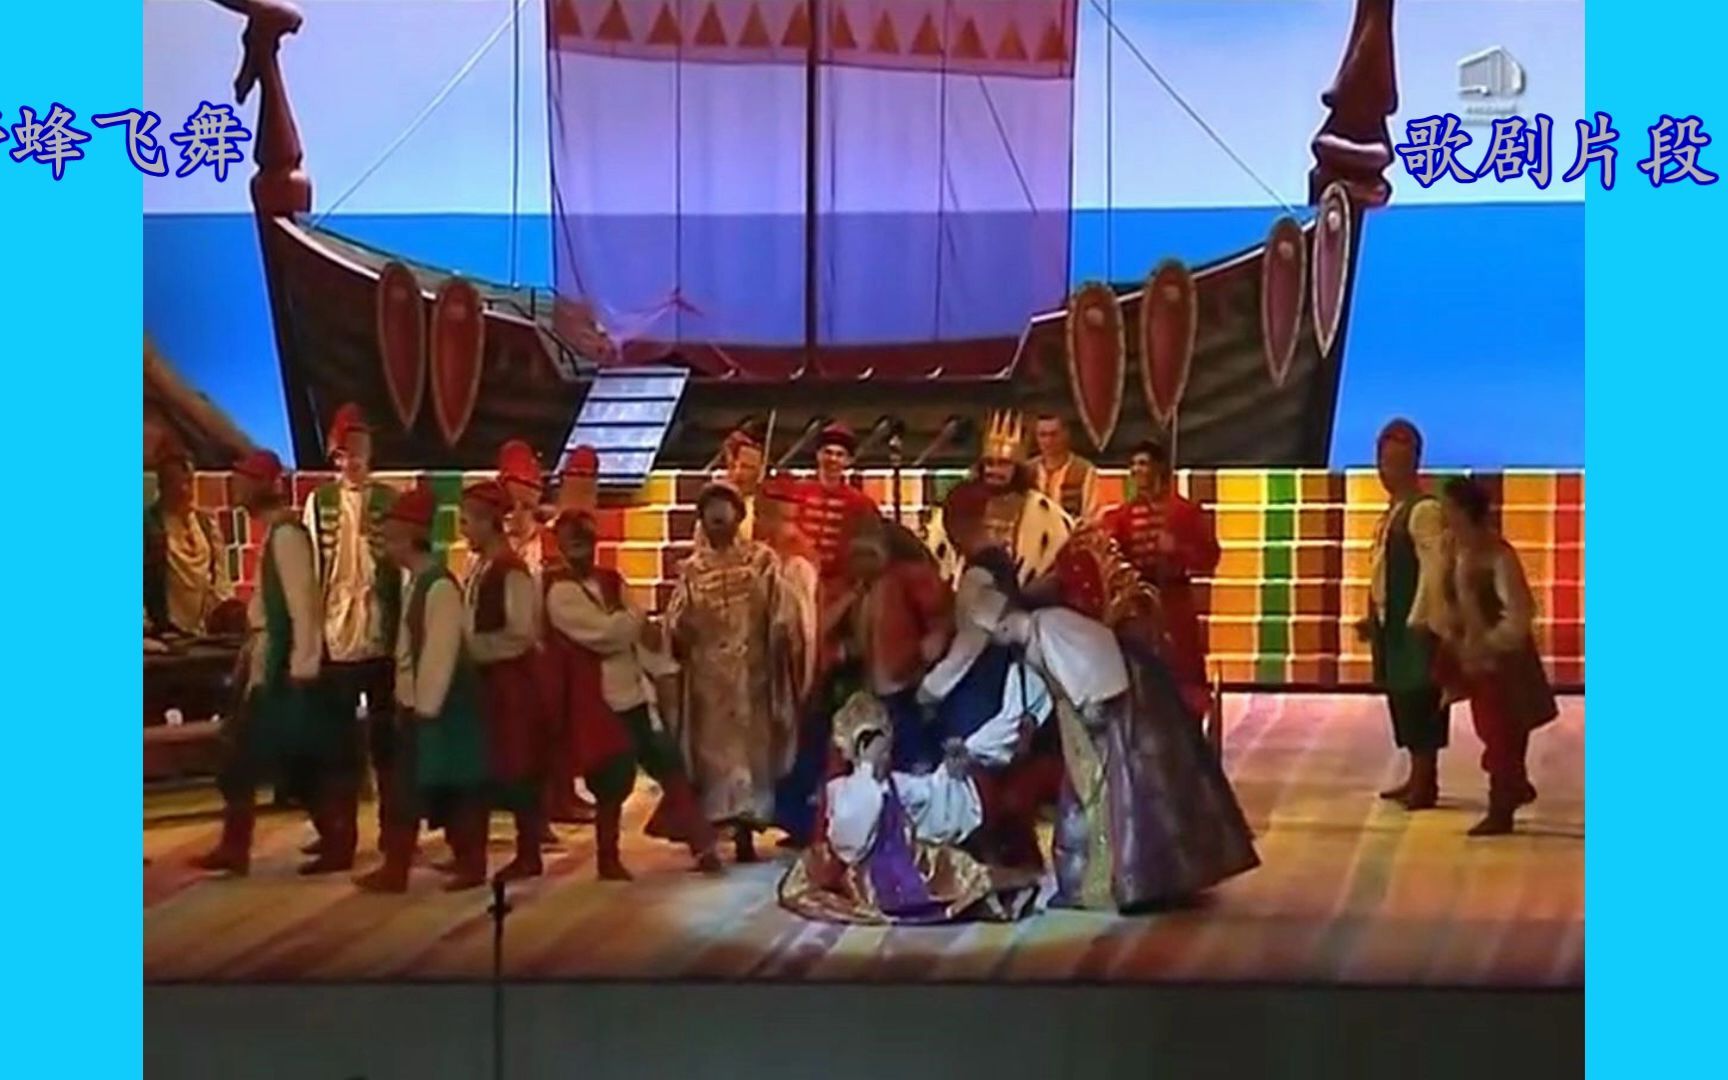 [图]野蜂飞舞-里姆斯基-科萨科夫歌剧《沙皇萨尔旦的故事》片段